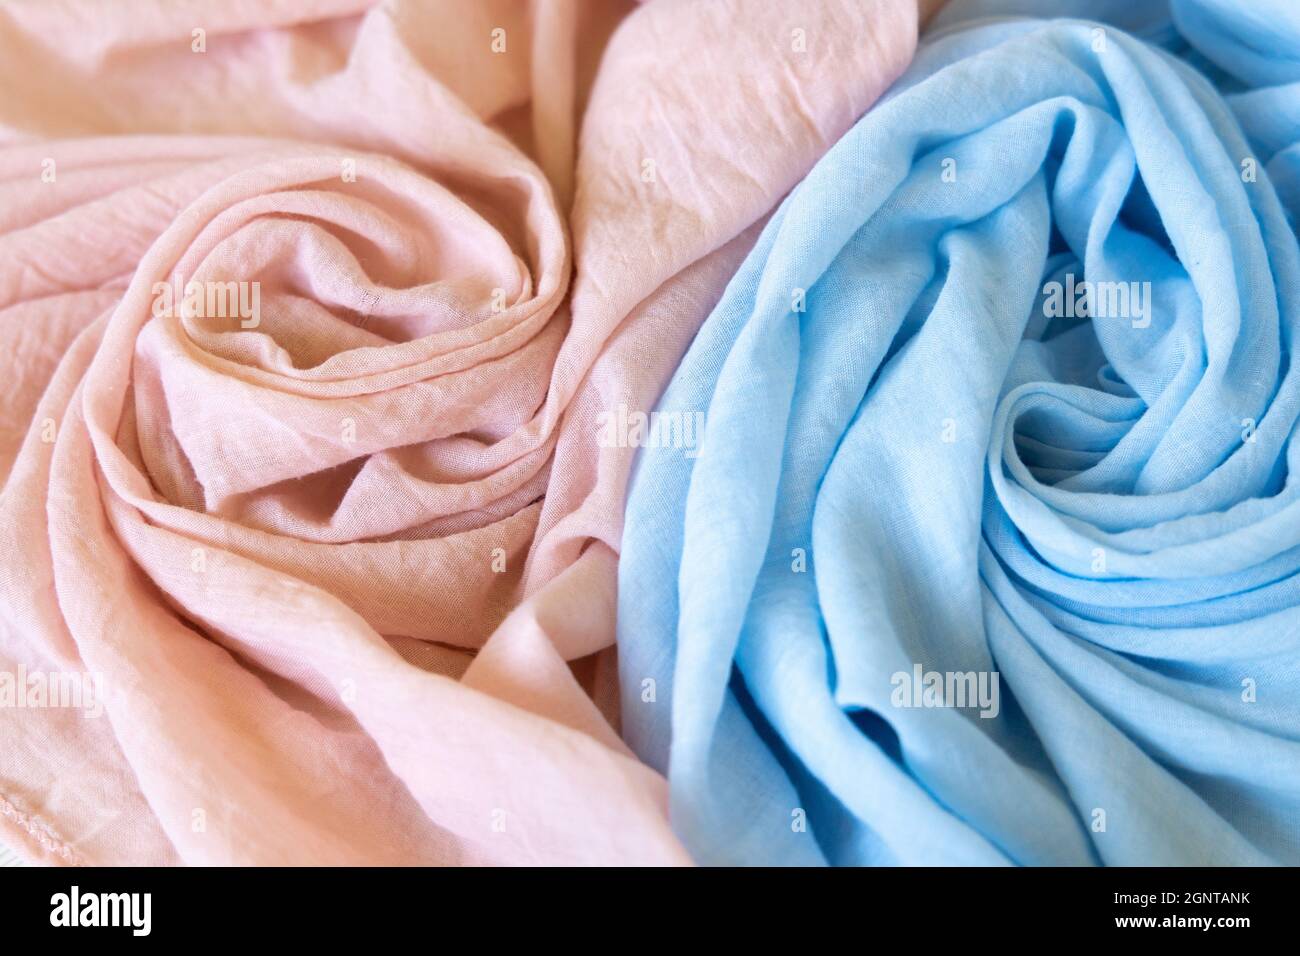 Zwei Farben Tuch Baby Junge und Baby Mädchen. Weiche Musselin Babydecke Hintergrund. Baumwollkleidung und Textilien. Natürliche Bio-Gewebe Textur. Leicht Stockfoto